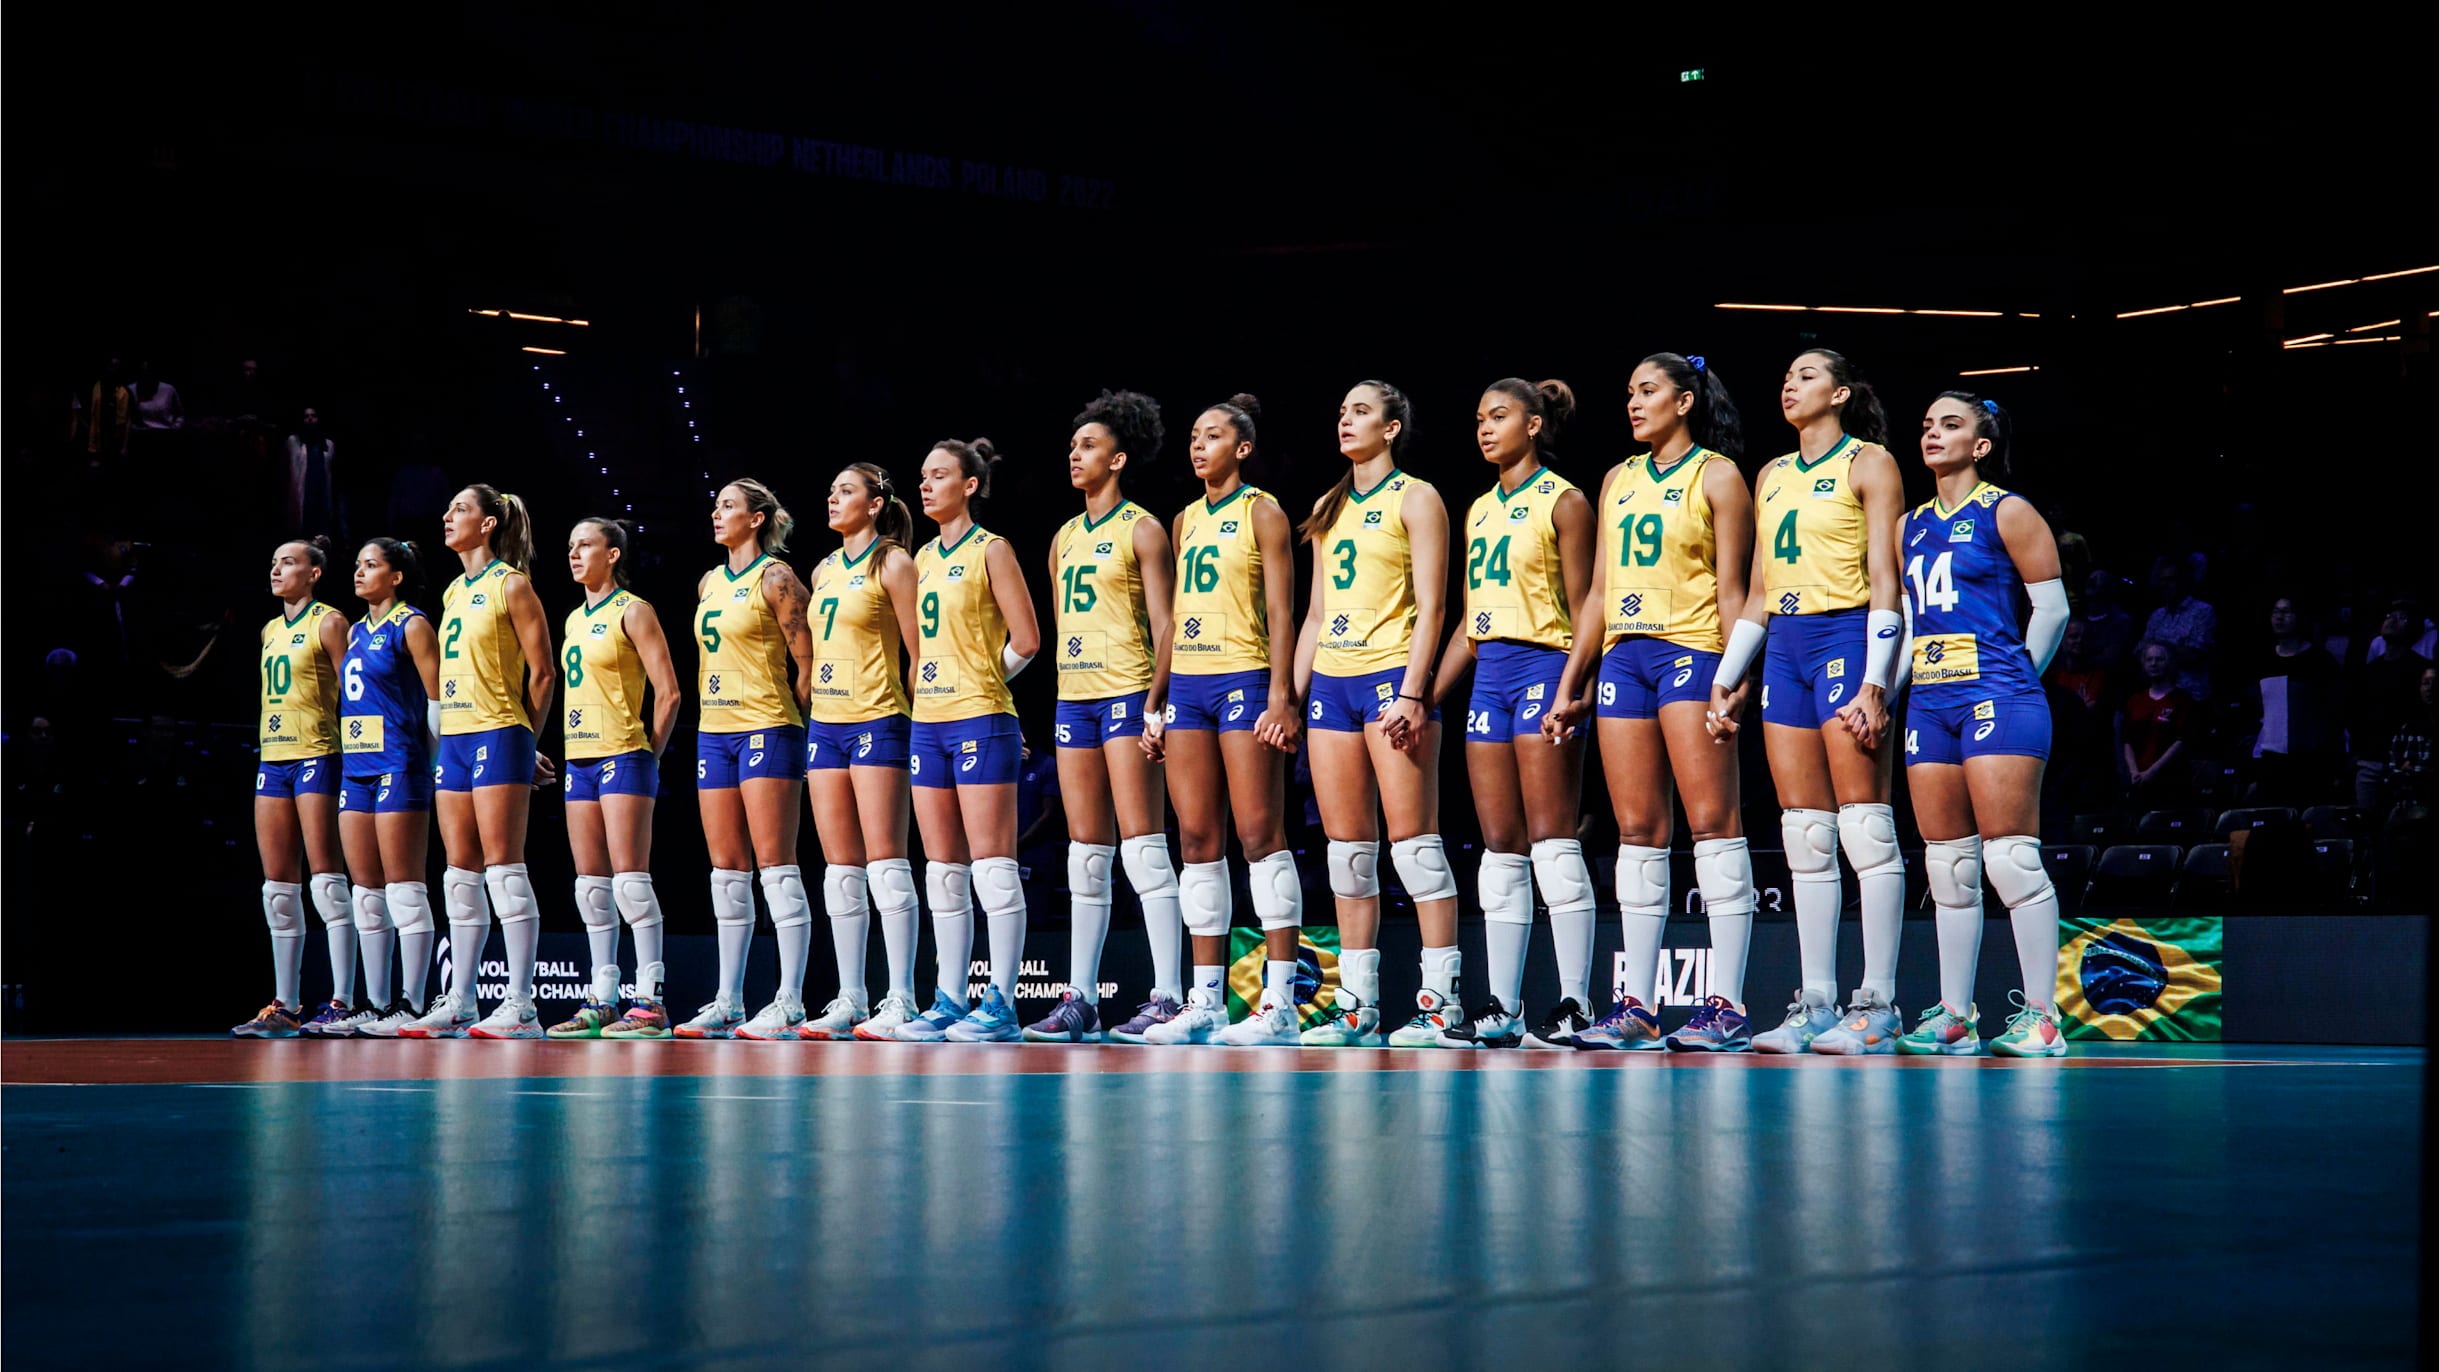 Mundial de vôlei feminino: Brasil x Japão nas quartas de final